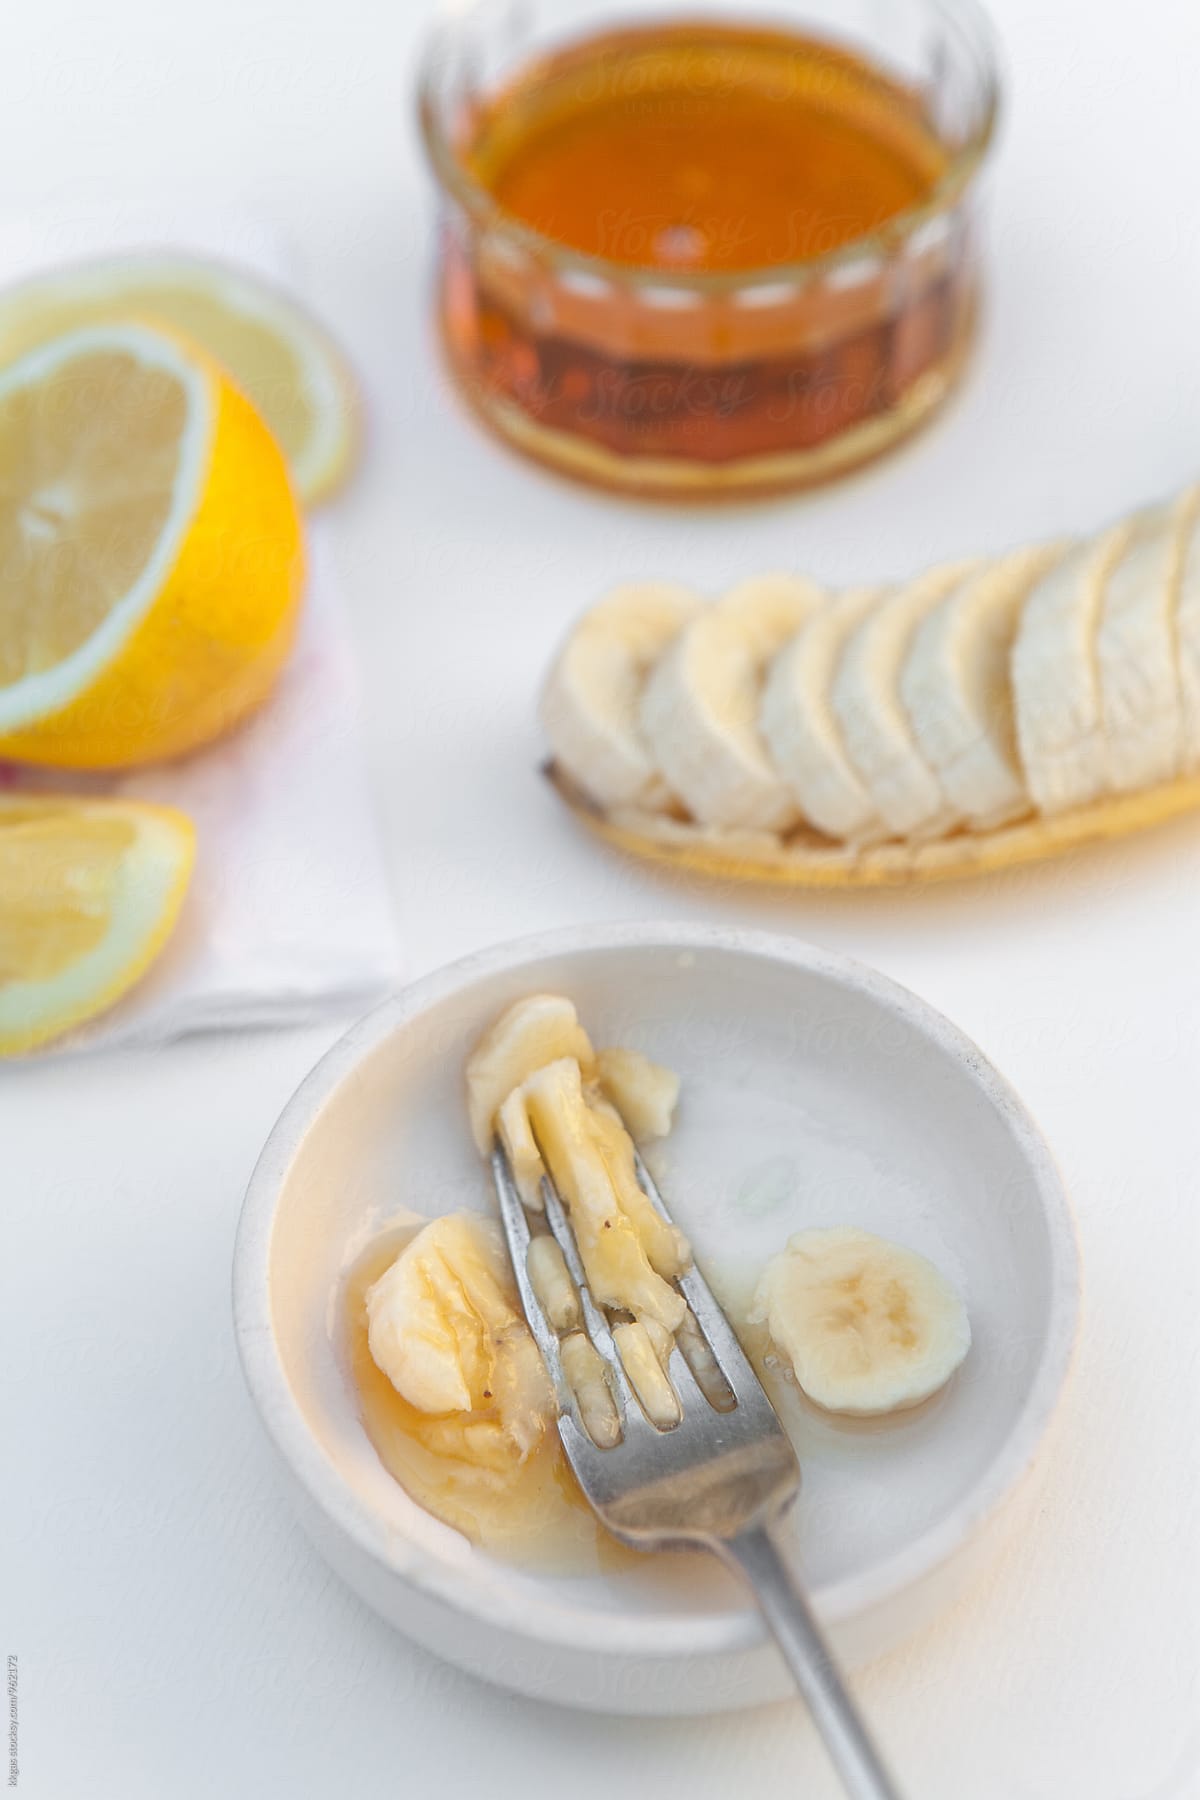 Homemade, natural Banana honey and lemon face mask